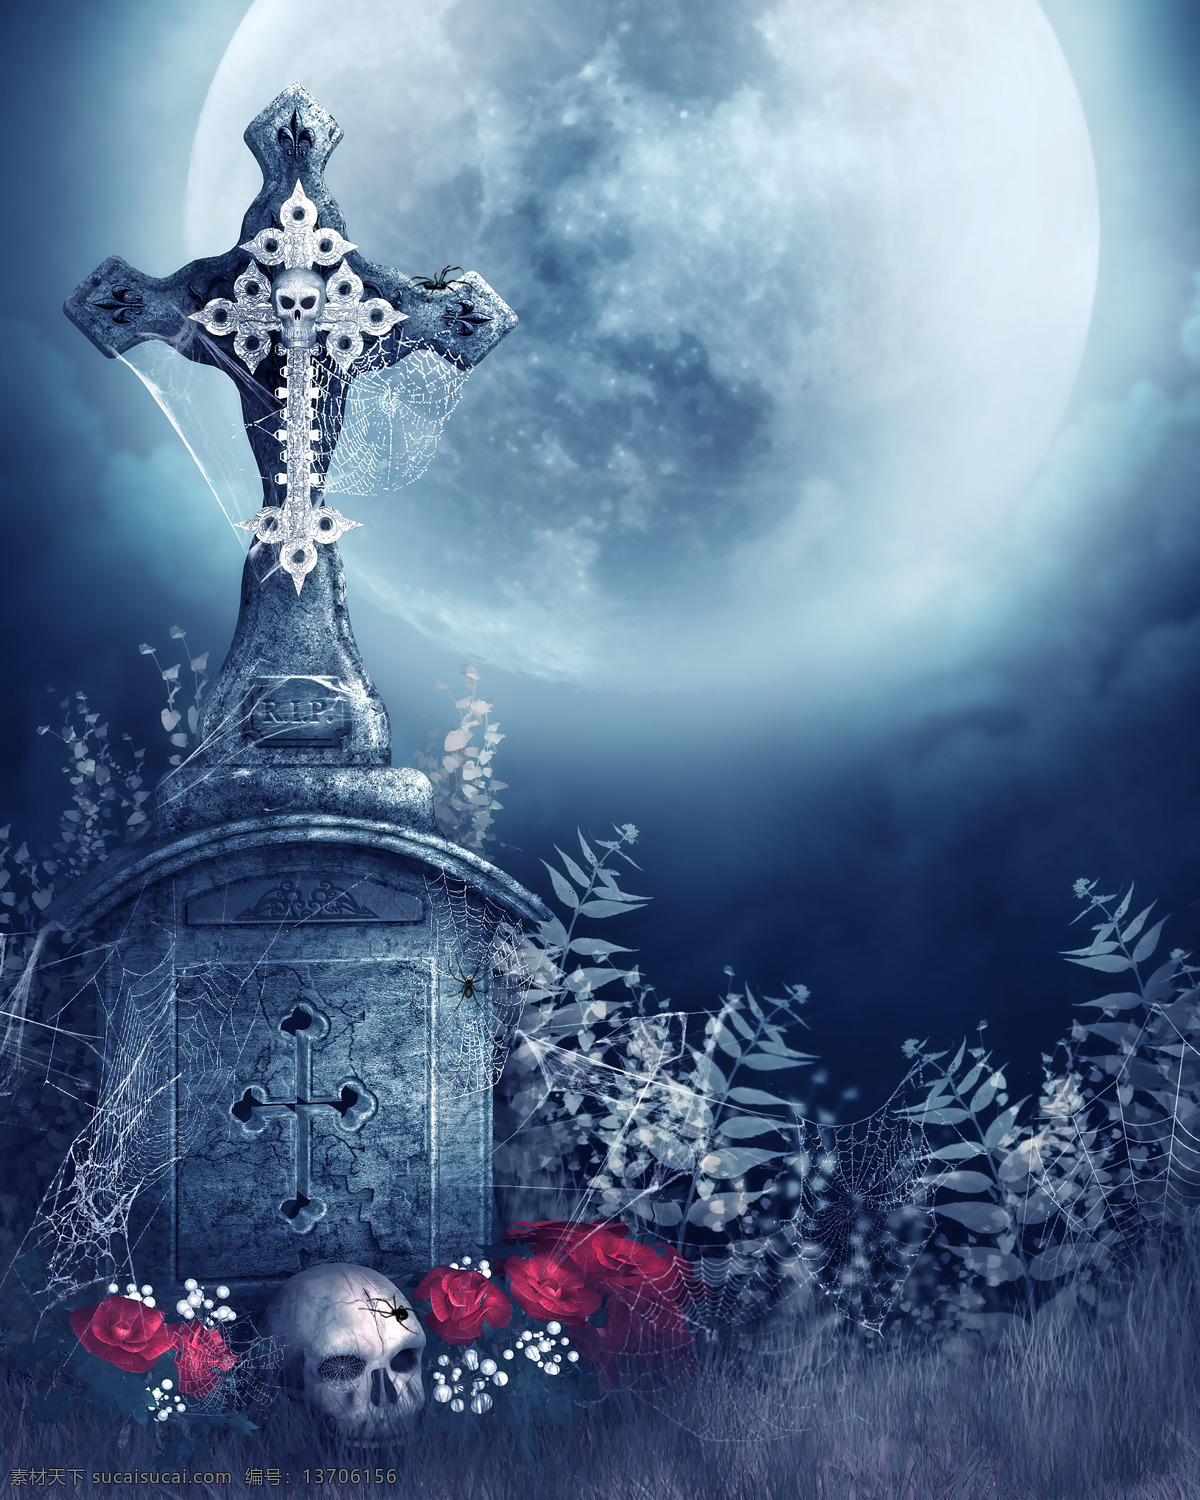 恶魔 十字架 骷髅头 玫瑰花 月光 蜘蛛网 荒凉 童话的景色 背景图片